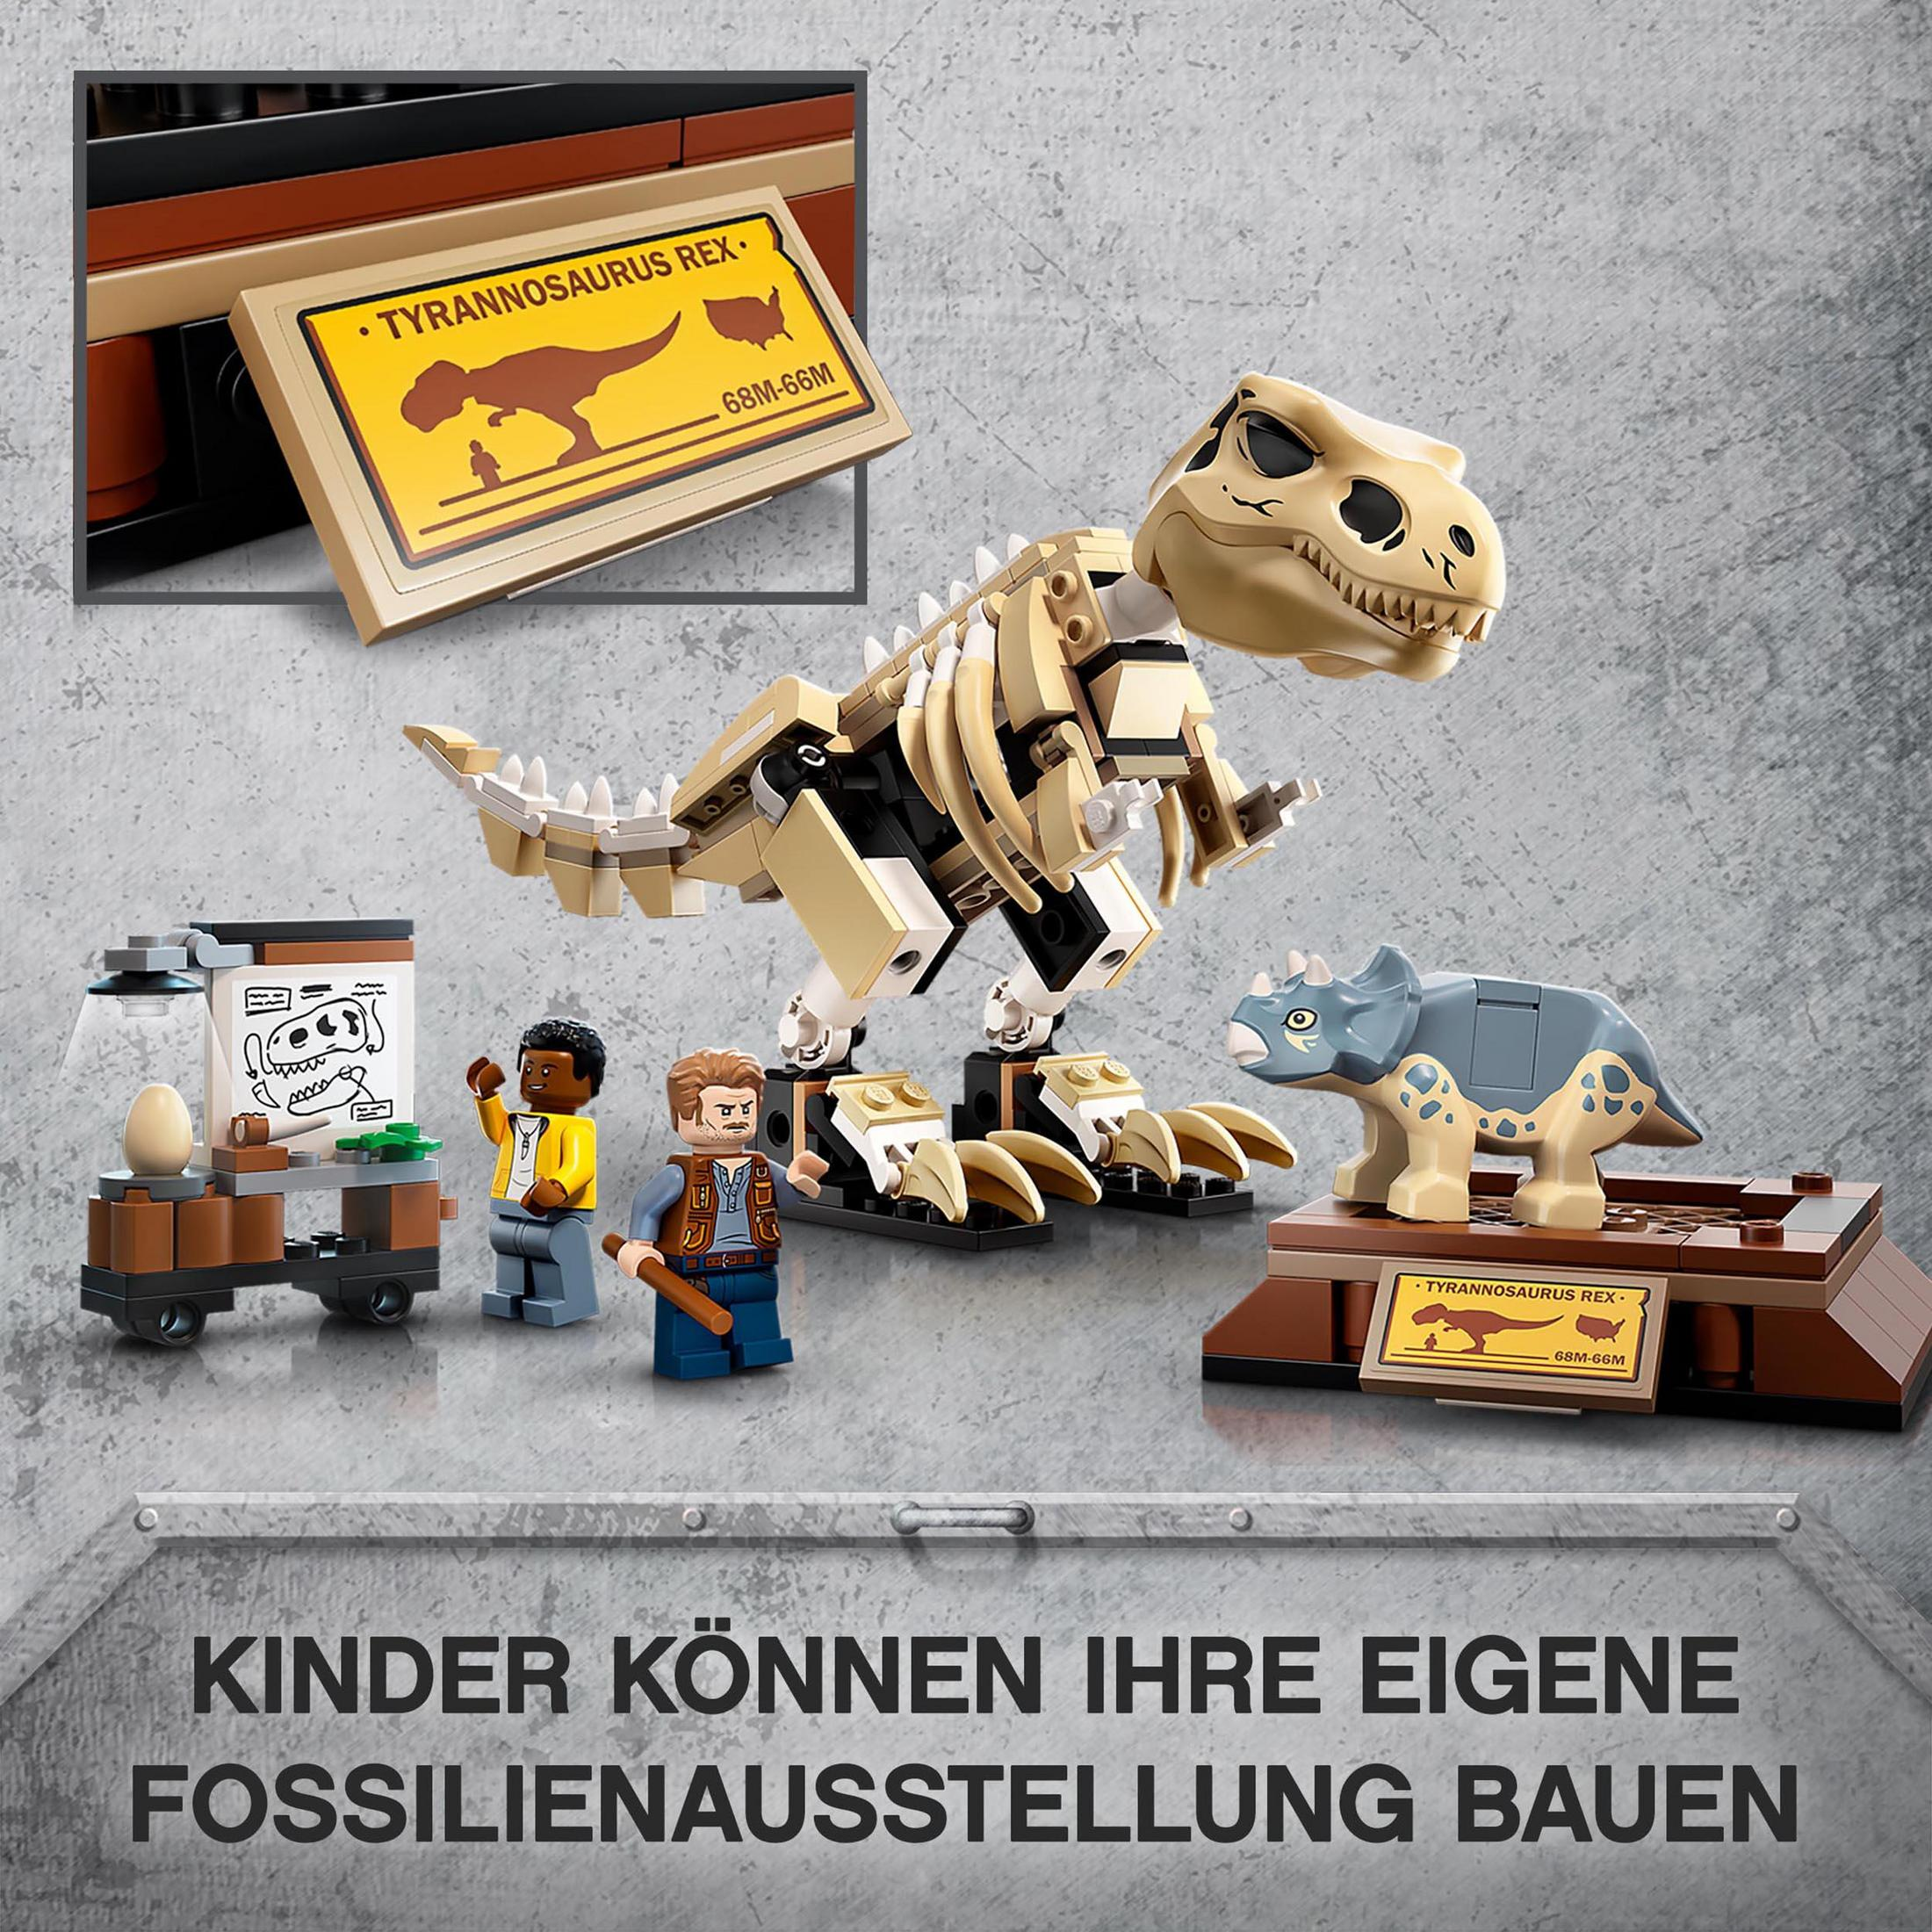 IN T.REX-SKELETT 76940 DER FOSSILIENAUSSTELLUNG LEGO Bausatz